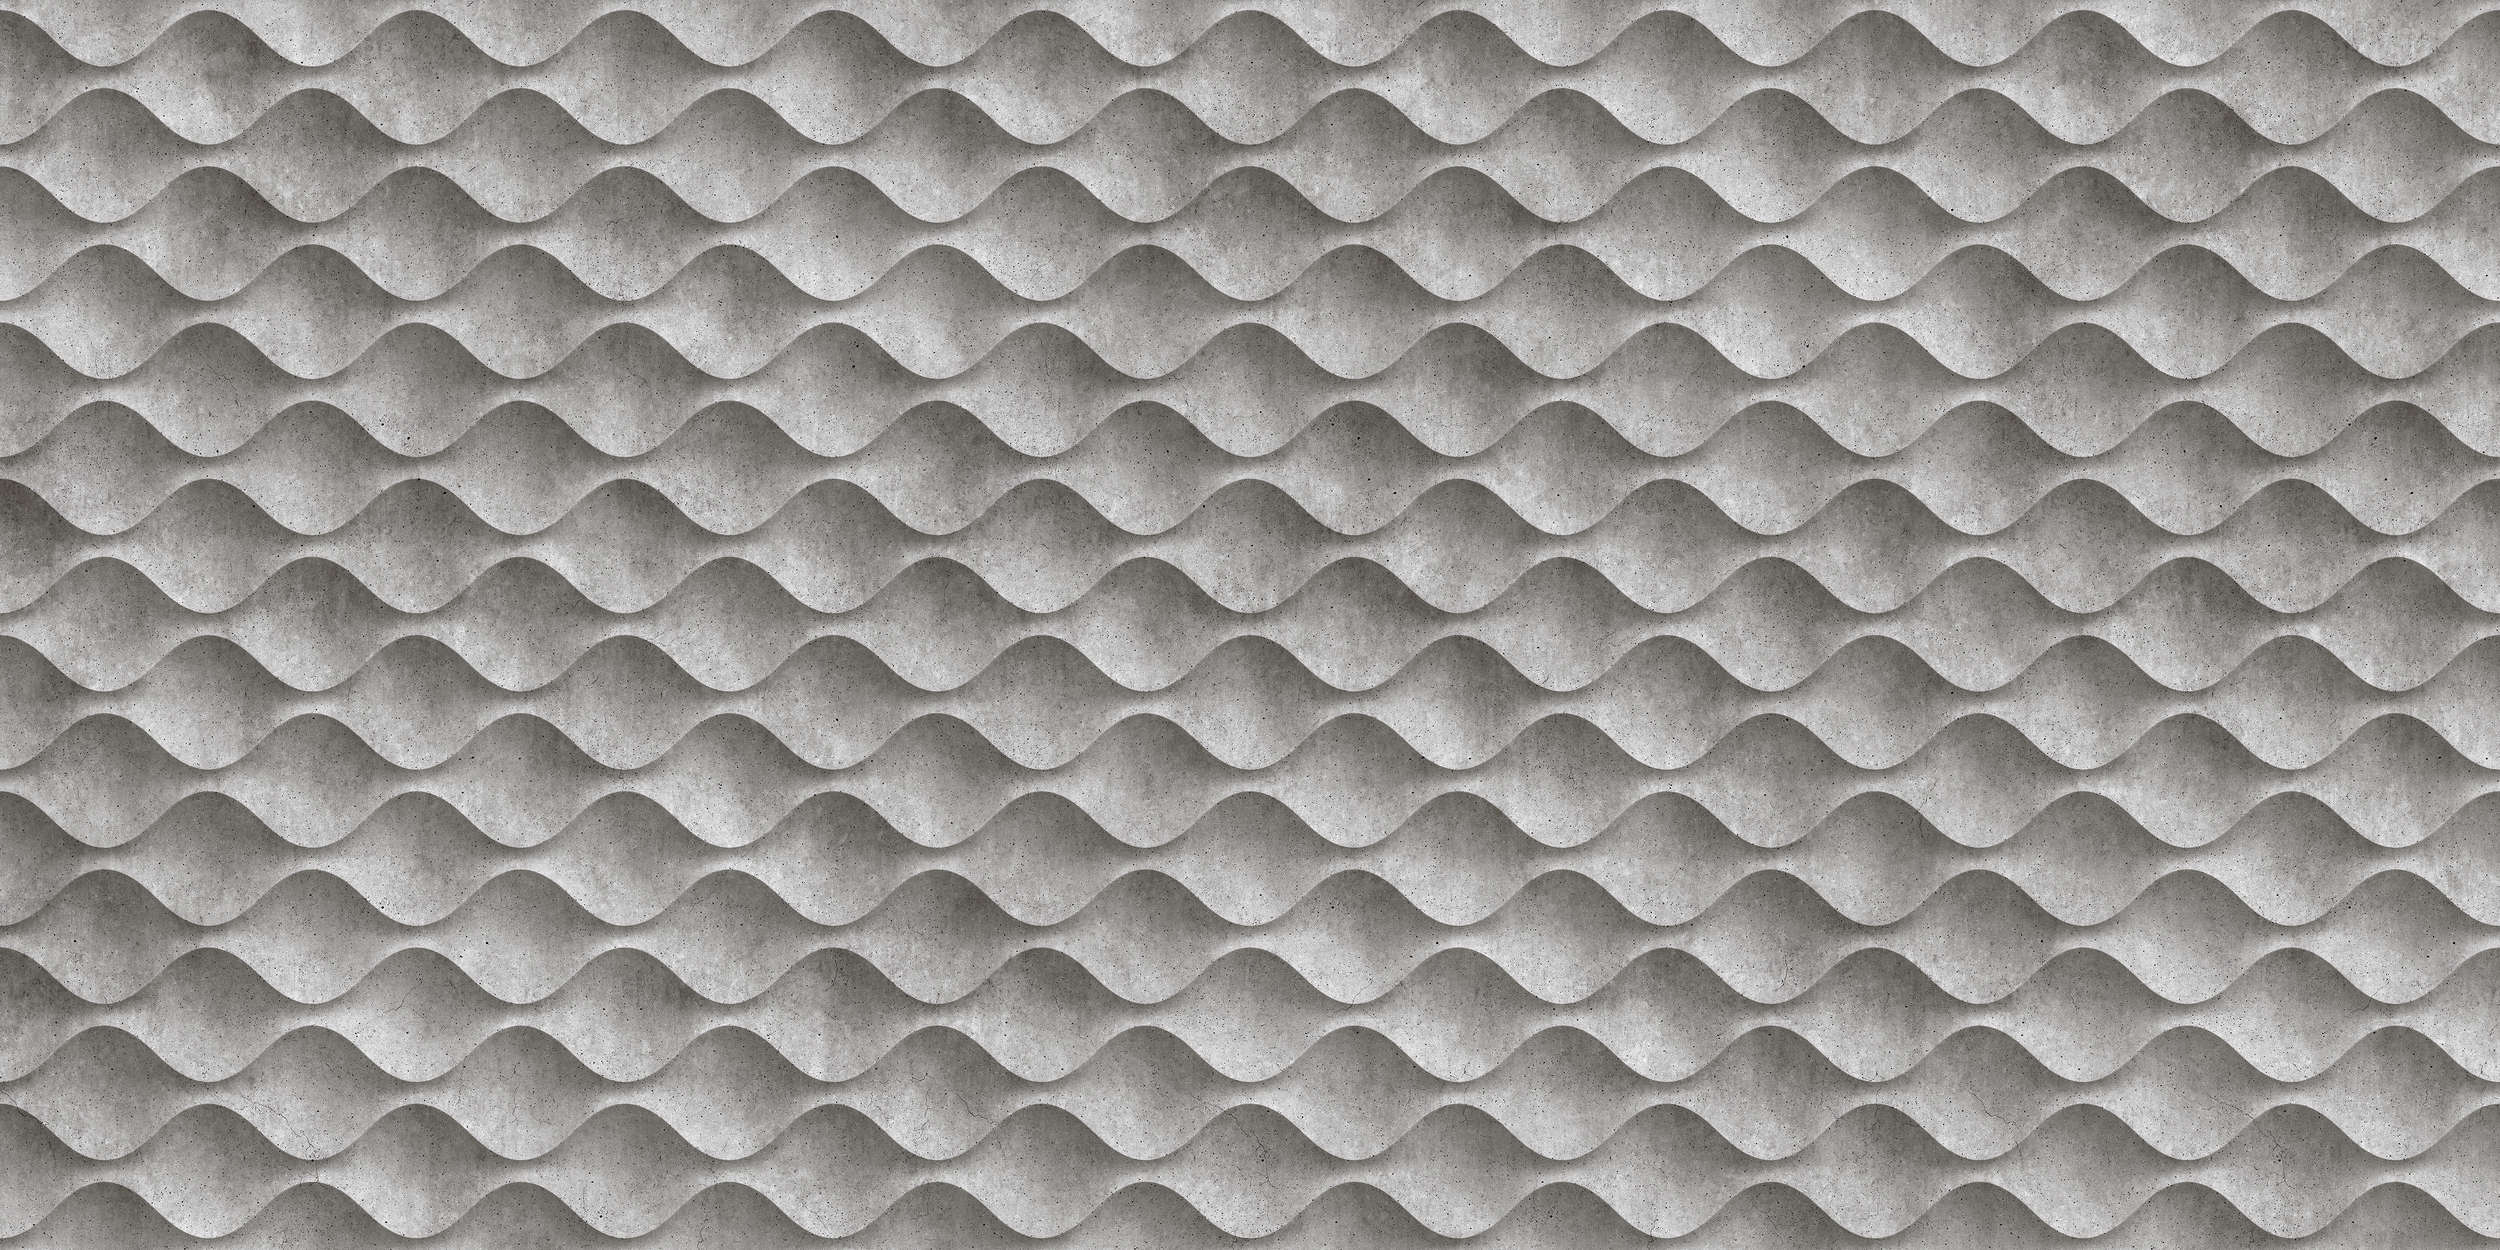             Concrete 1 - Papier peint 3D cool en béton ondulé - gris, noir | intissé lisse nacré
        